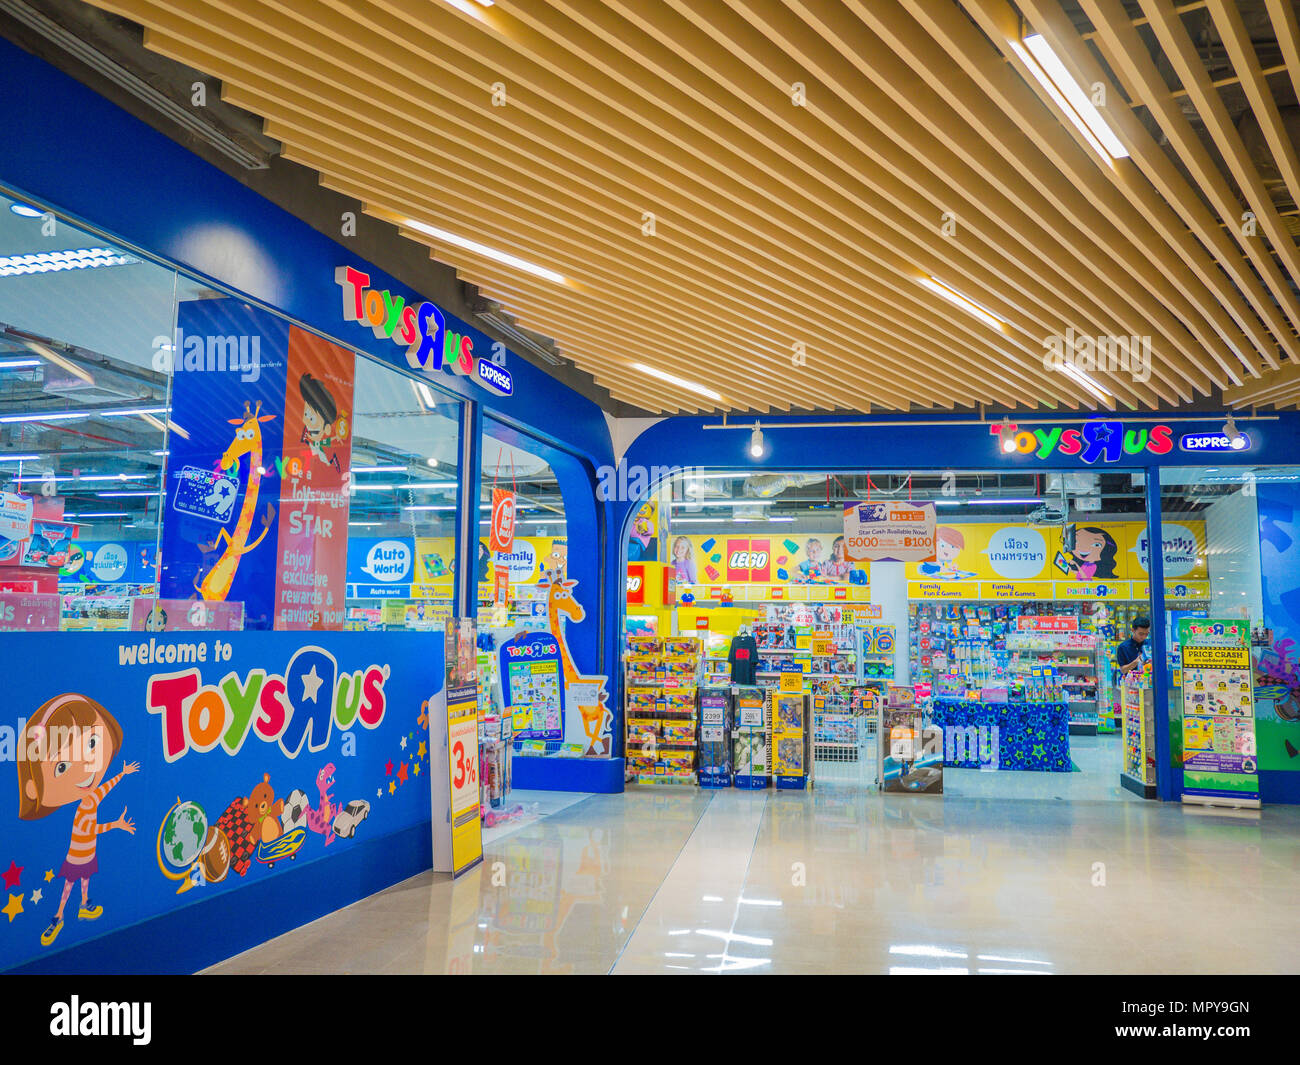 Songkhla, Thailand - Sep 22, 2017: Toys 'R' Us Shop. Toys 'R' Us ist der  führende kids Store für alle Spielzeug, Spiele, Puppen, Action Figuren,  lernen ga Stockfotografie - Alamy